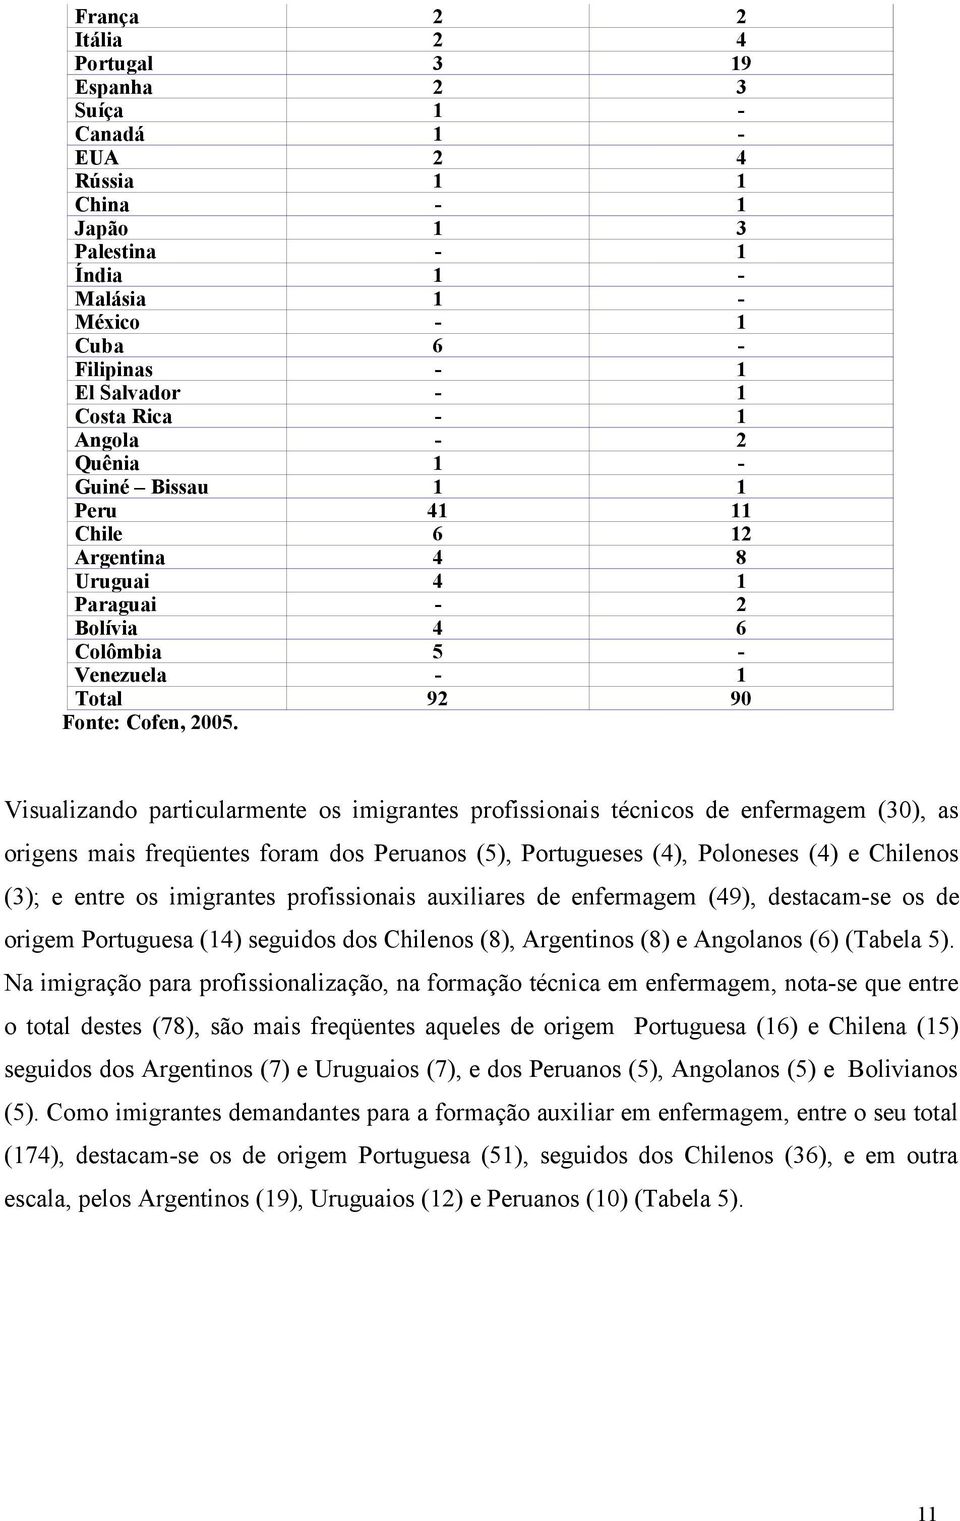 Visualizando particularmente os imigrantes profissionais técnicos de enfermagem (30), as origens mais freqüentes foram dos Peruanos (5), Portugueses (4), Poloneses (4) e Chilenos (3); e entre os